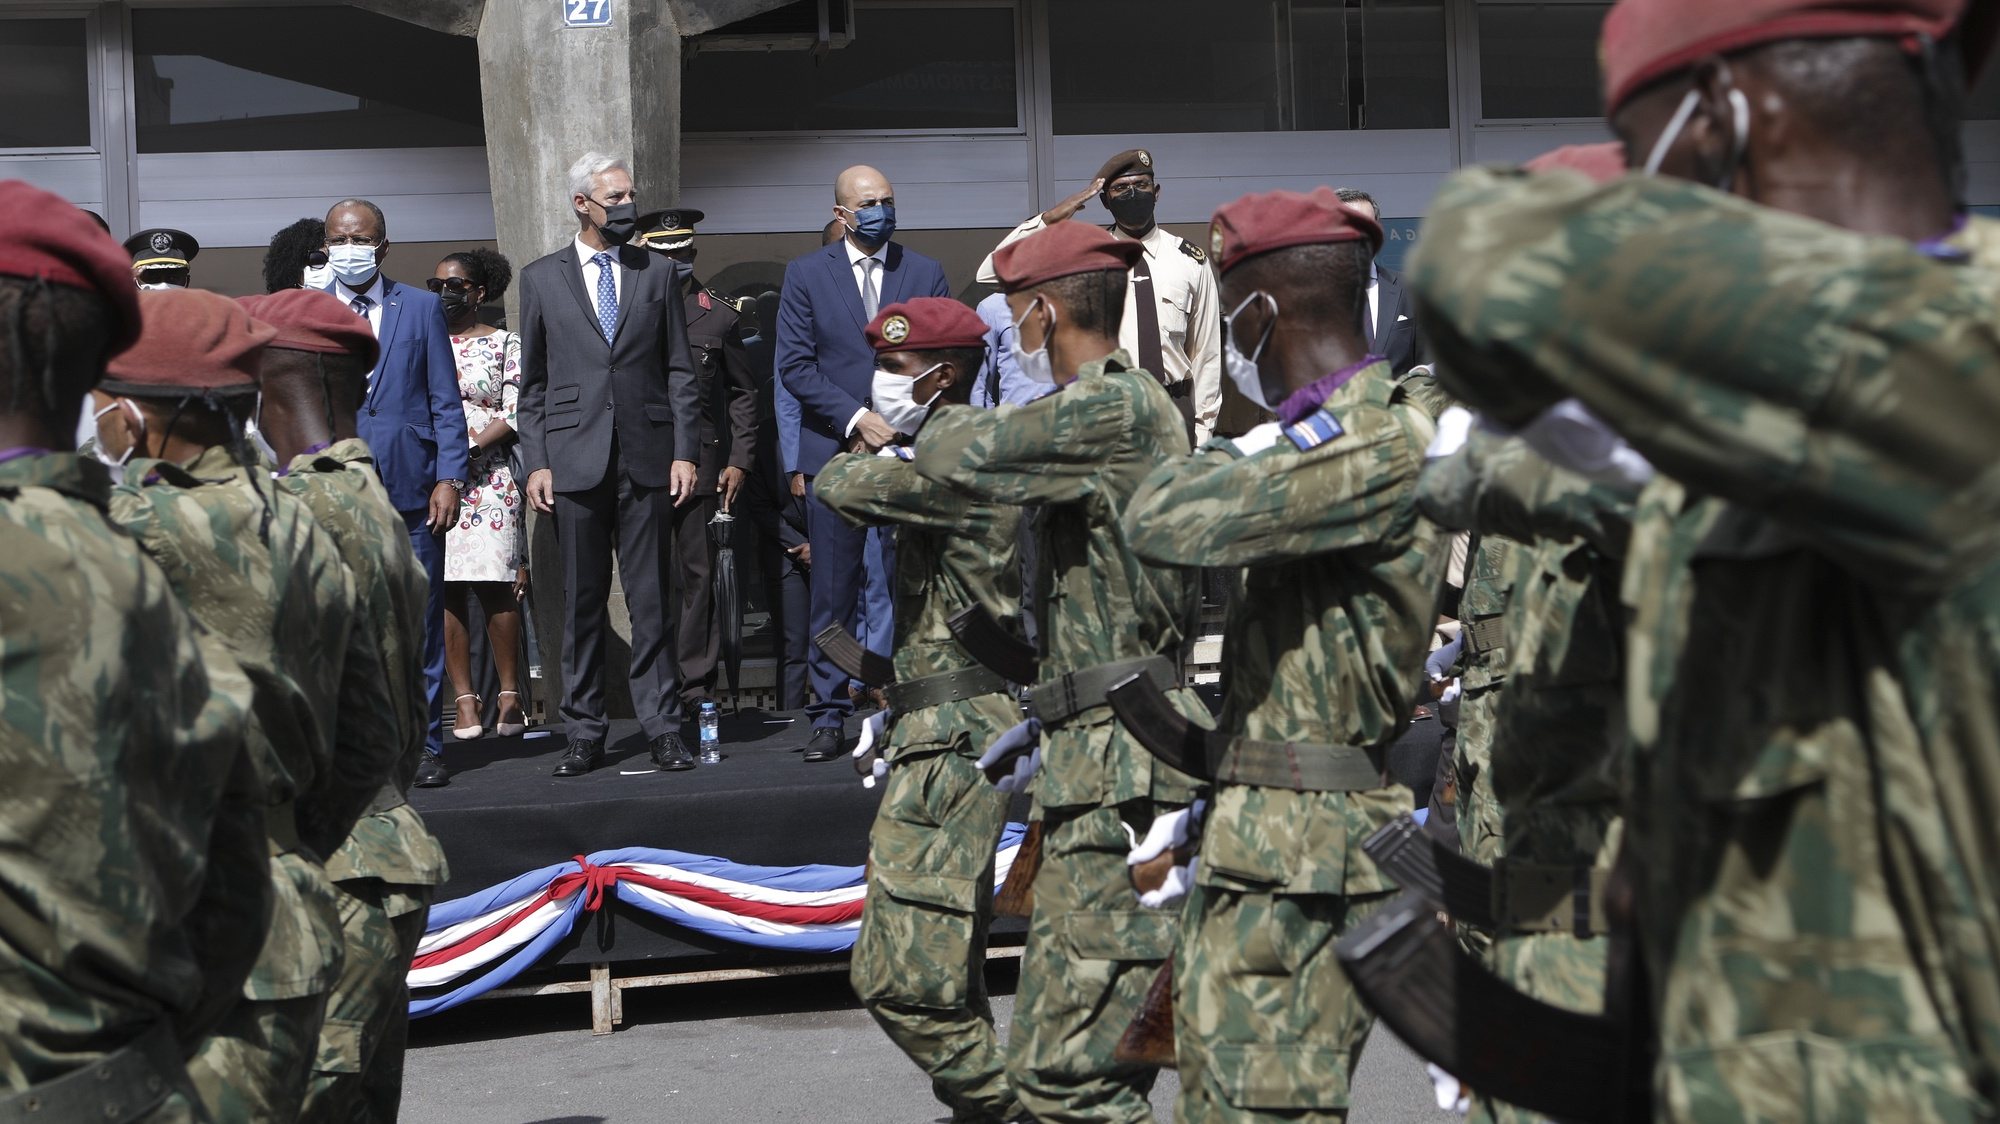 O ministro da Defesa Nacional, João Gomes Cravinho  acompanha do primeiro-ministro Ulisses Correia e Siiva, durante o desfile militar realizado em comemoração ao Dia da Defesa Nacional, na cidade da Praia, em Cabo Verde, 06 de novembro de 2021. ELTON MONTEIRO/LUSA